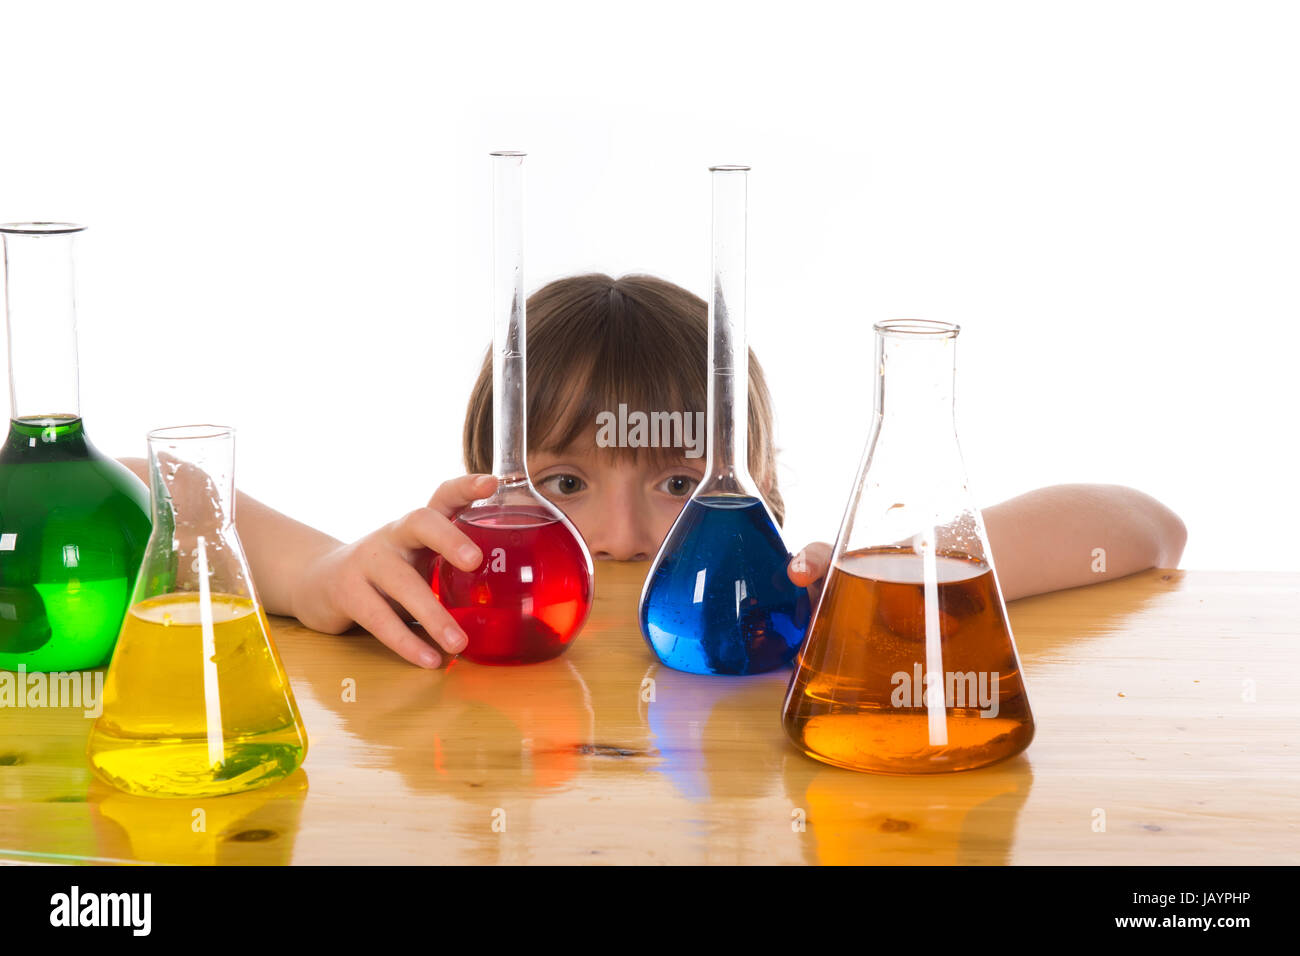 Fille de l'école de faire des expériences scientifiques sur la chimie Banque D'Images